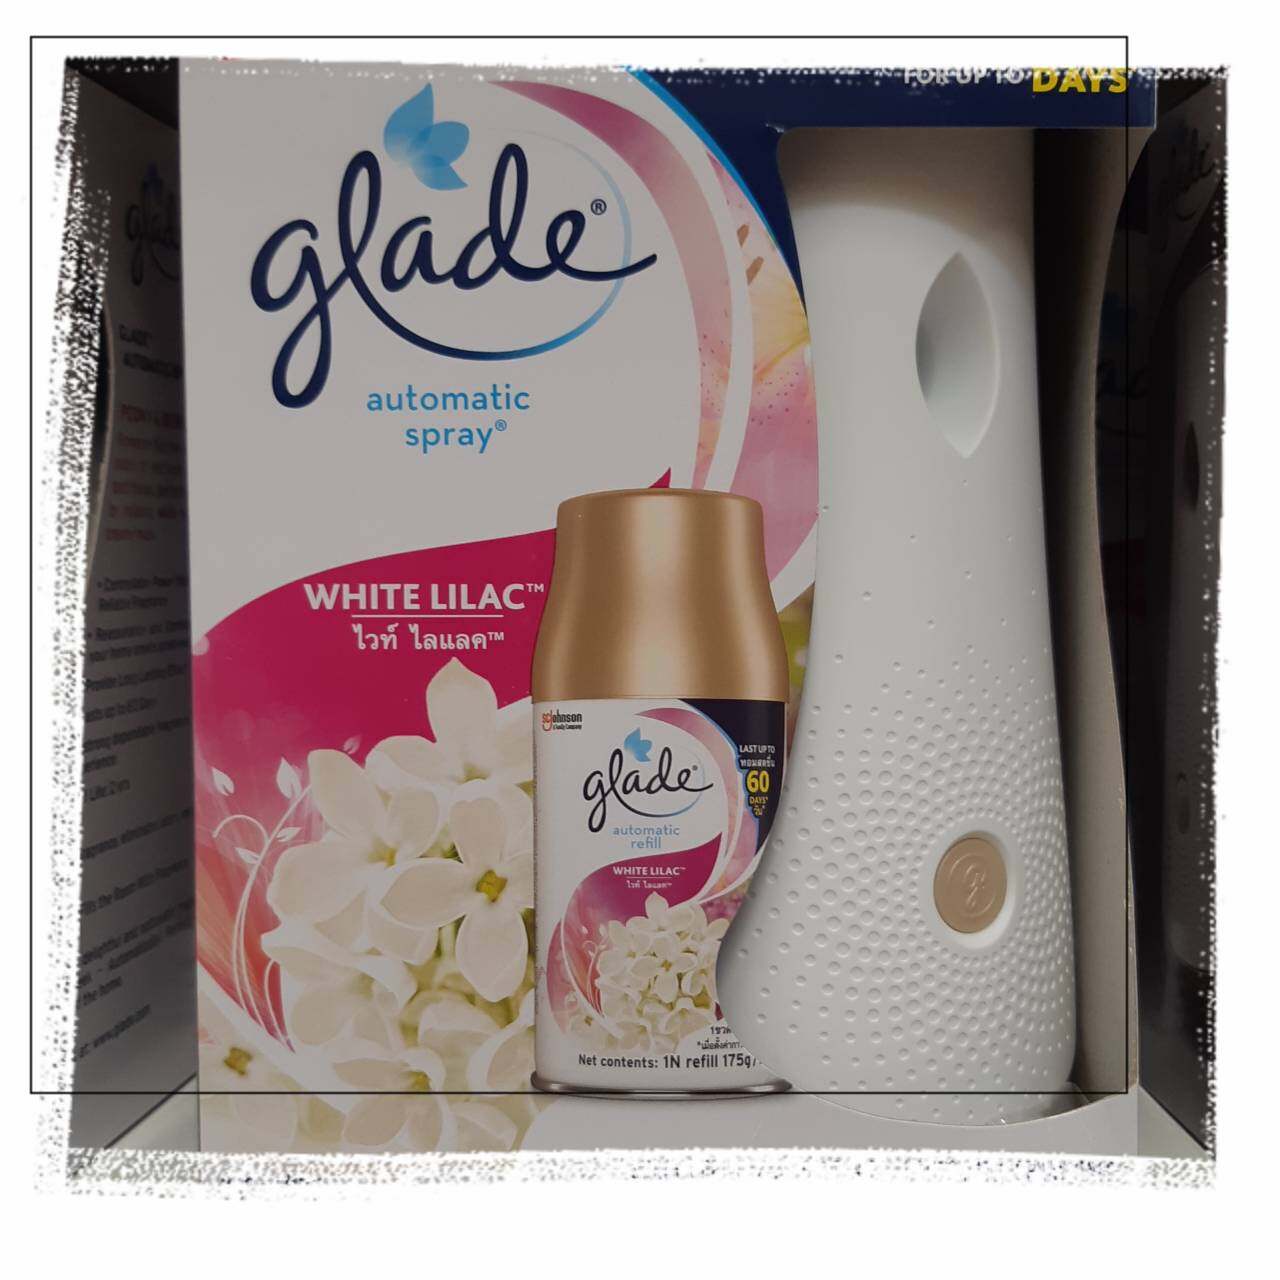 Glade Automatic Spray กลิ่น white lilac (ตัวเครื่องพร้อมสเปรย์ 1 กระป๋อง+ถ่าน 2 ก้อน) gladeปรับอากาศ น้ำหอมปรับอากาศ น้ำหอมห้อง glade เกลดออโตเมติคสเปรย์